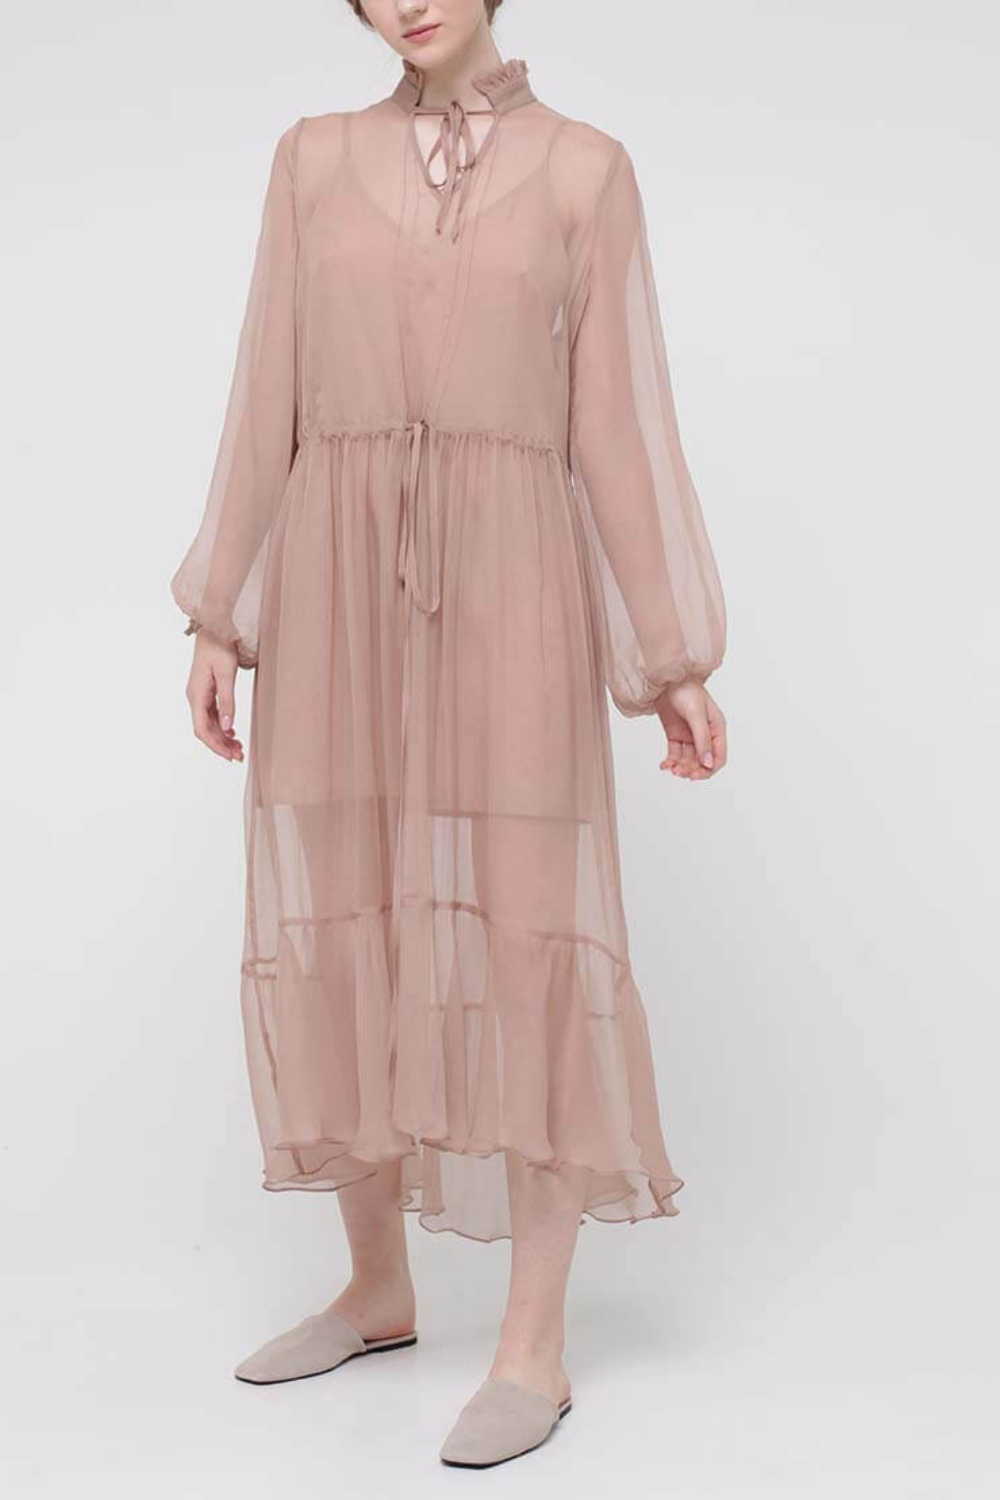 Šifonové šaty midi s volánem dole, béžová, (MissSecret), DR-018-beige